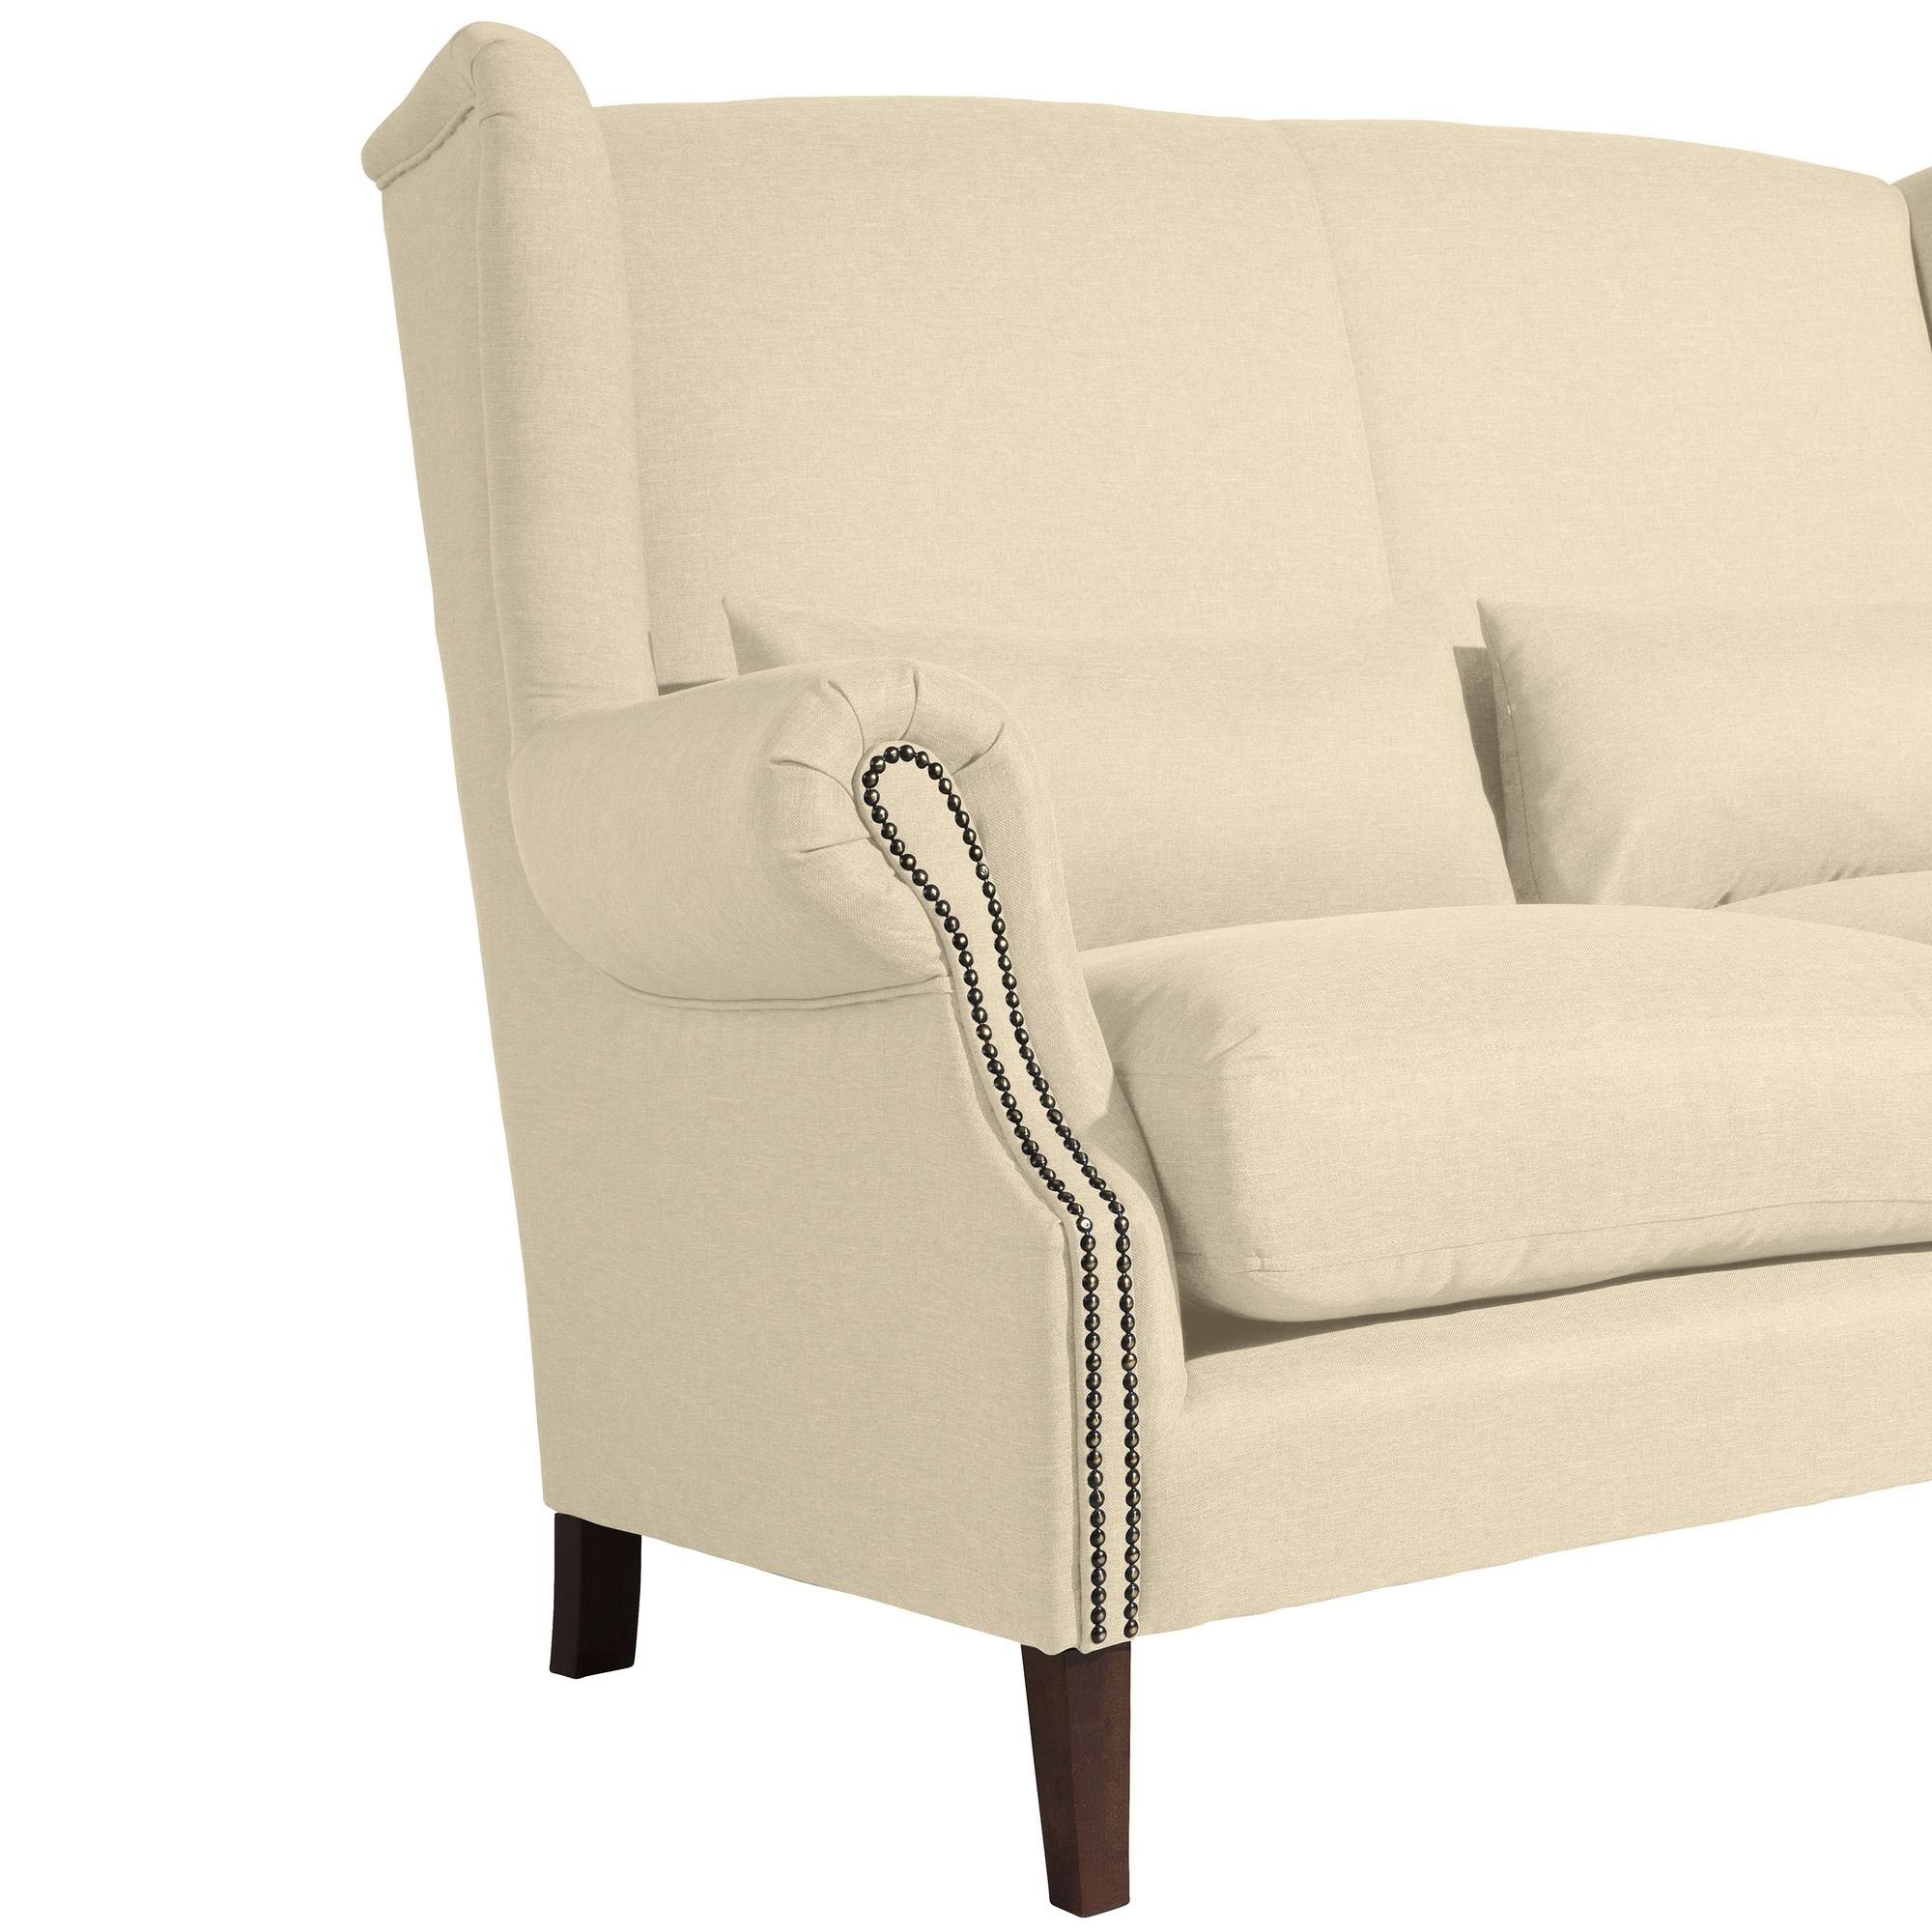 Sparpreis Sofa 58 Sitz verarbeitet,bequemer Teile, nussba, Kandy Sofa Flachgewebe Bezug Buche 2-Sitzer 1 Kostenlosem hochwertig aufm Versand Kessel inkl.